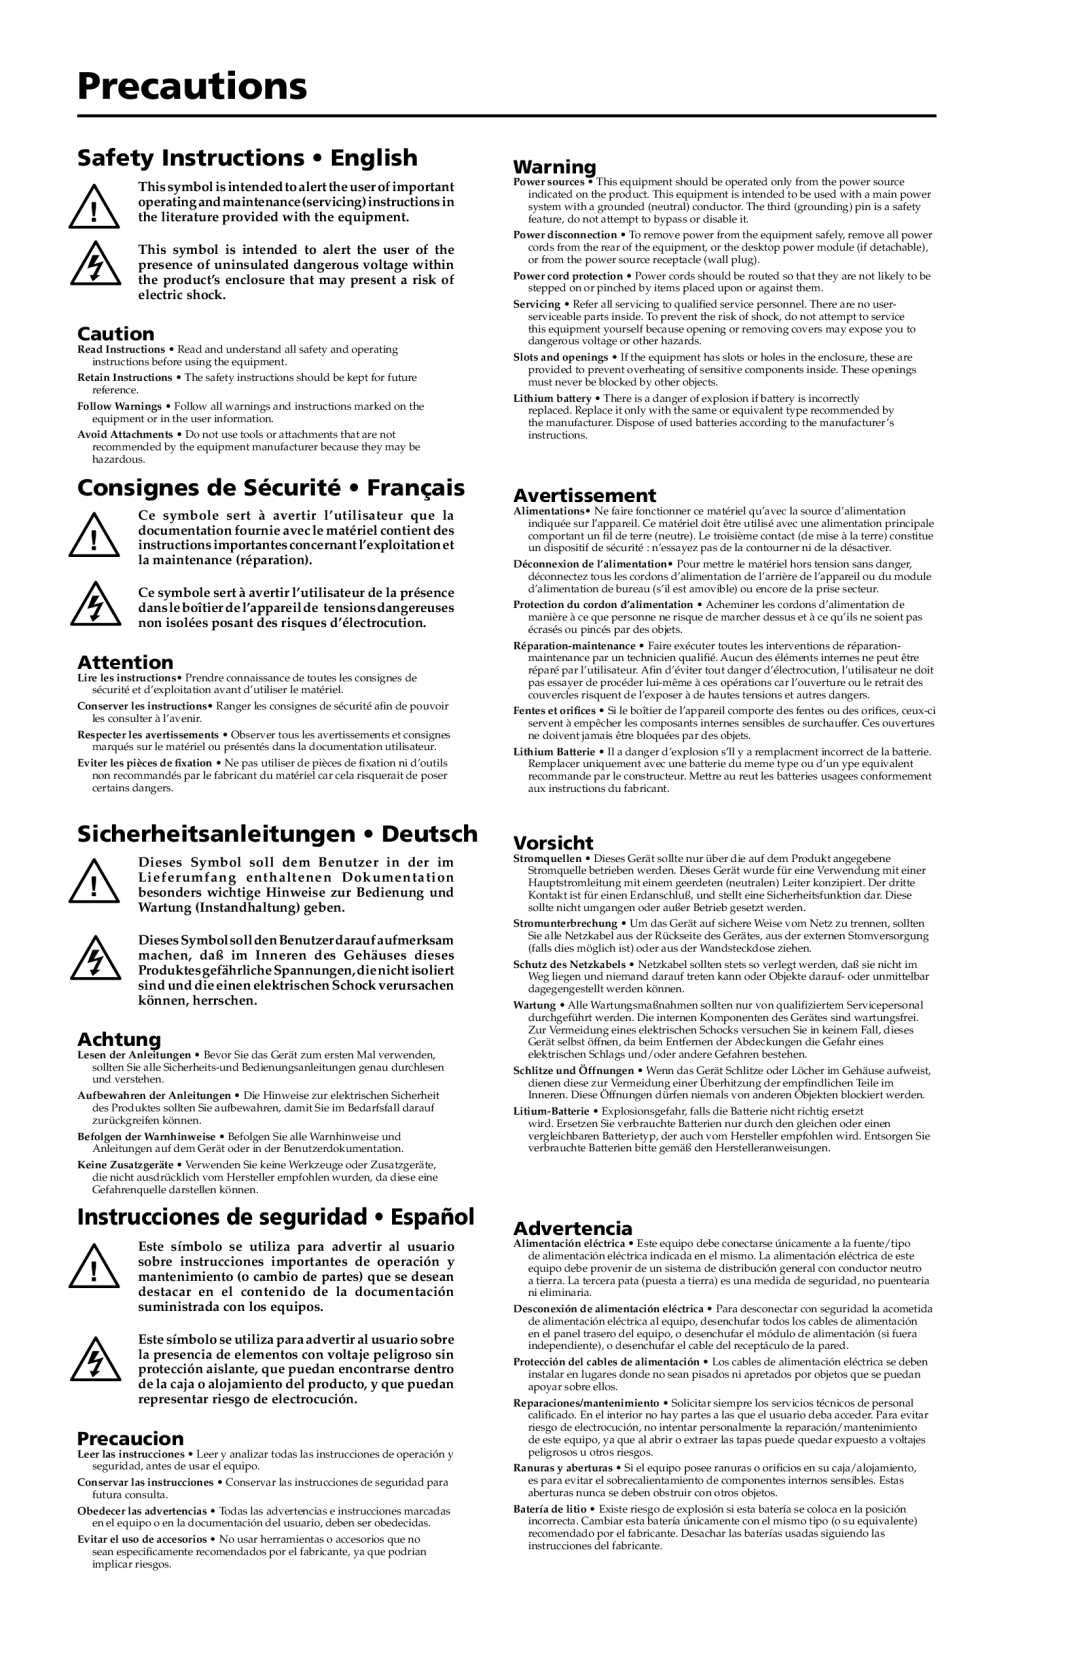 Extron electronic PA 300 Precautions, Safety Instructions English, Consignes de Sécurité Français, Avertissement, Achtung 